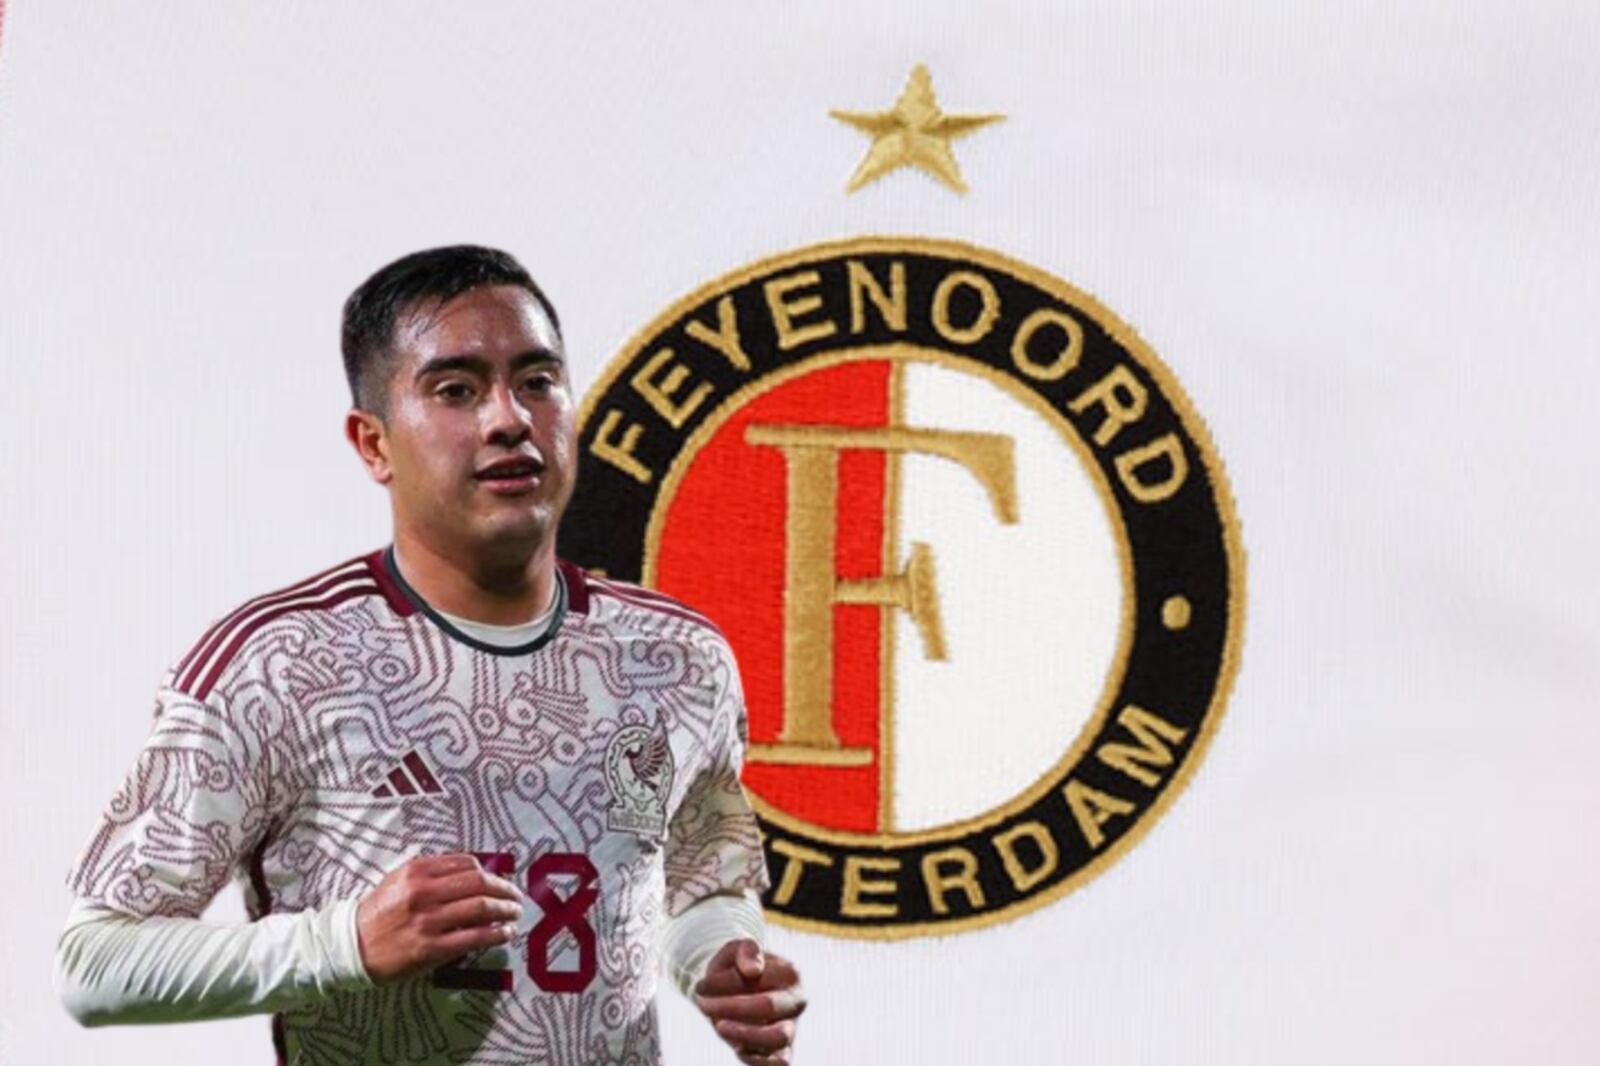 No sólo Chiquito Sánchez, Feyenoord ficharía a 2 mexicanos más para el verano